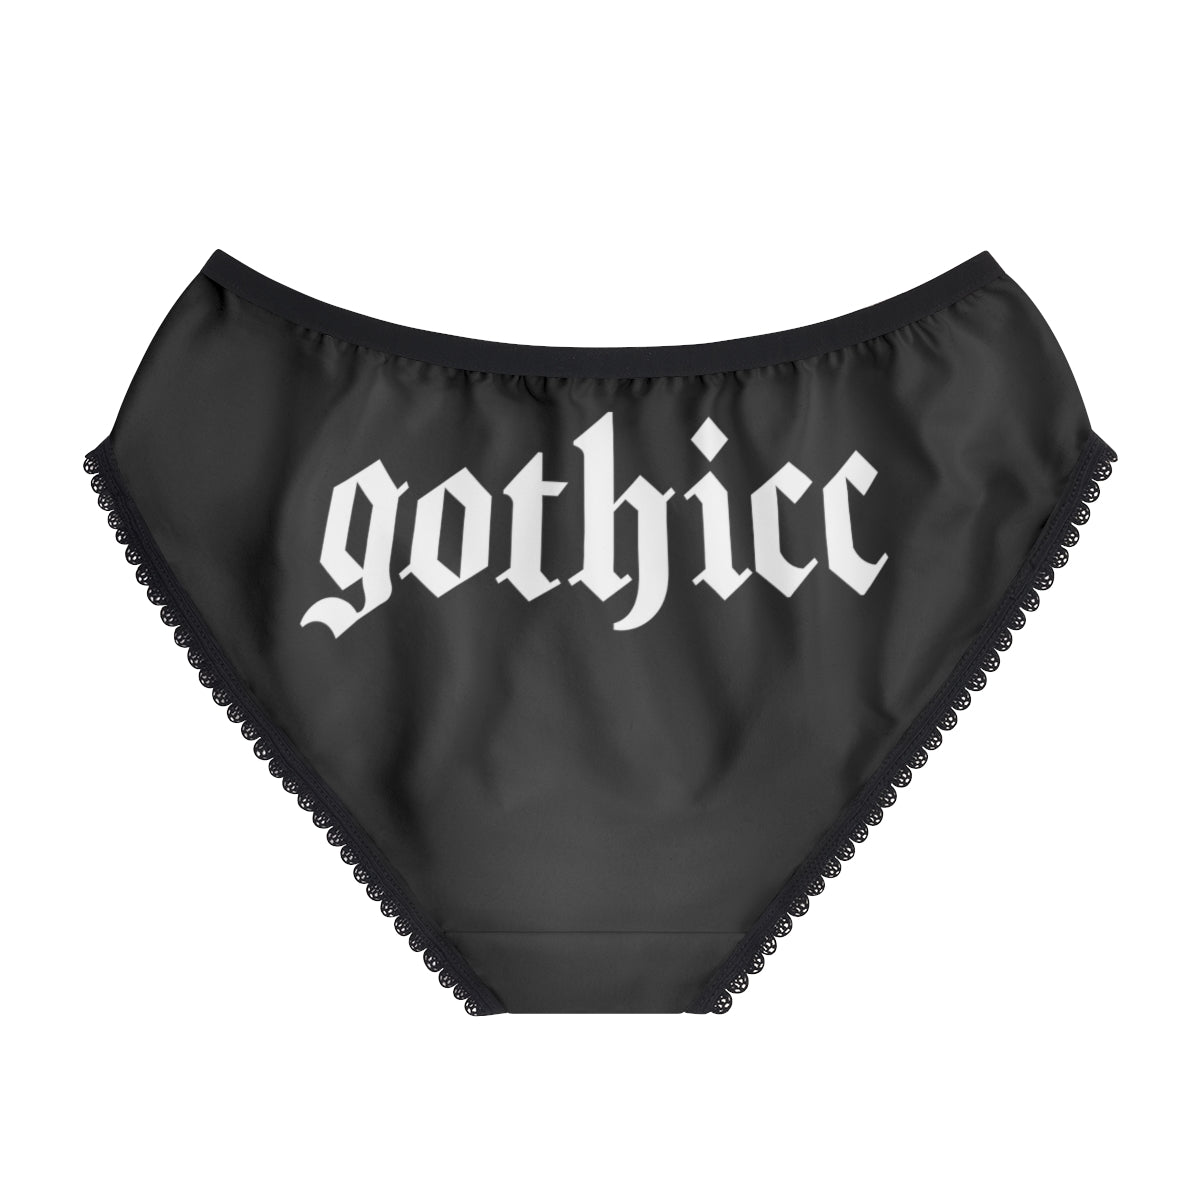 Just the Tip Knife Horror Movie Underwear, Gothic Dainty